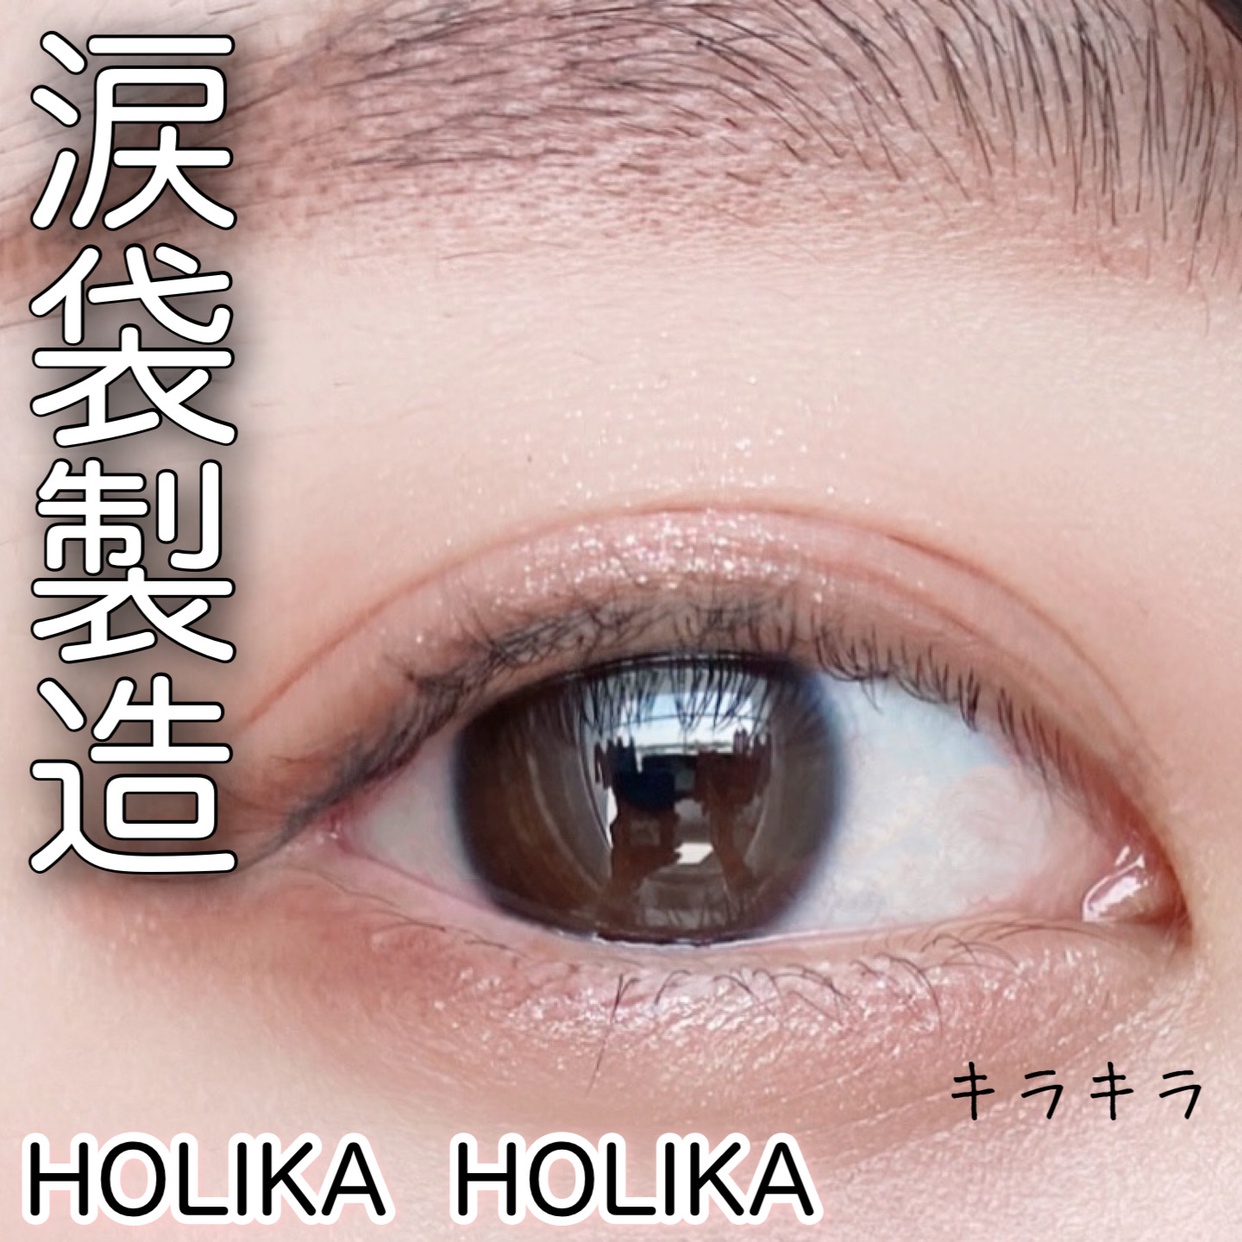 HOLIKA HOLIKA(ホリカホリカ) ジュエル ライト アンダー アイメーカーの良い点・メリットに関するyunaさんの口コミ画像1